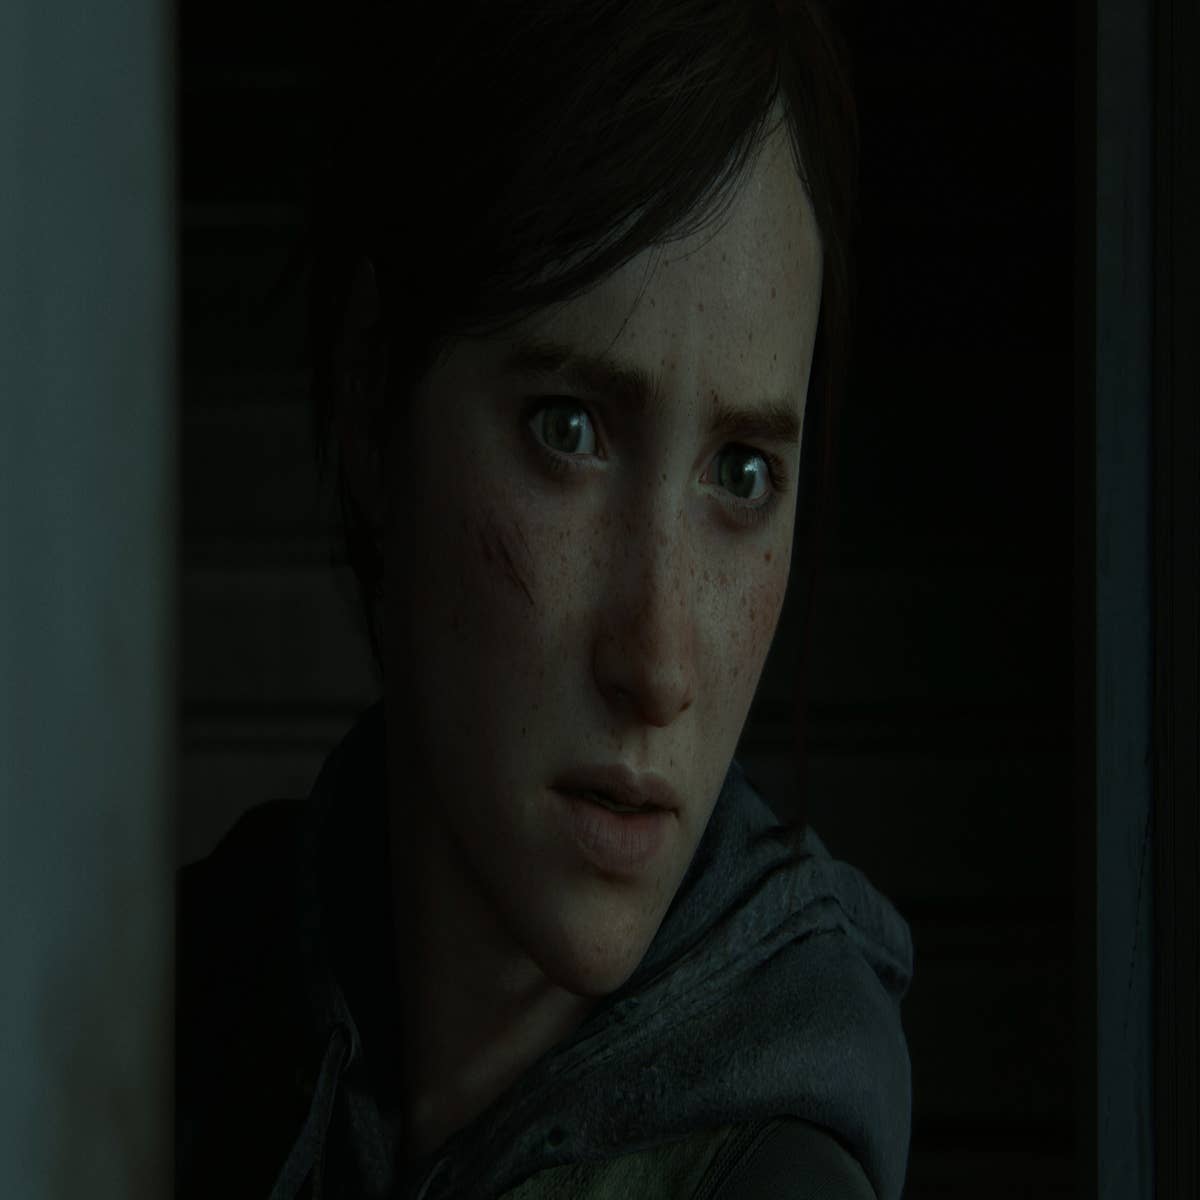 The Last of Us Part II': Produtora se pronuncia sobre ameaças de morte  recebidas pela atriz - CinePOP